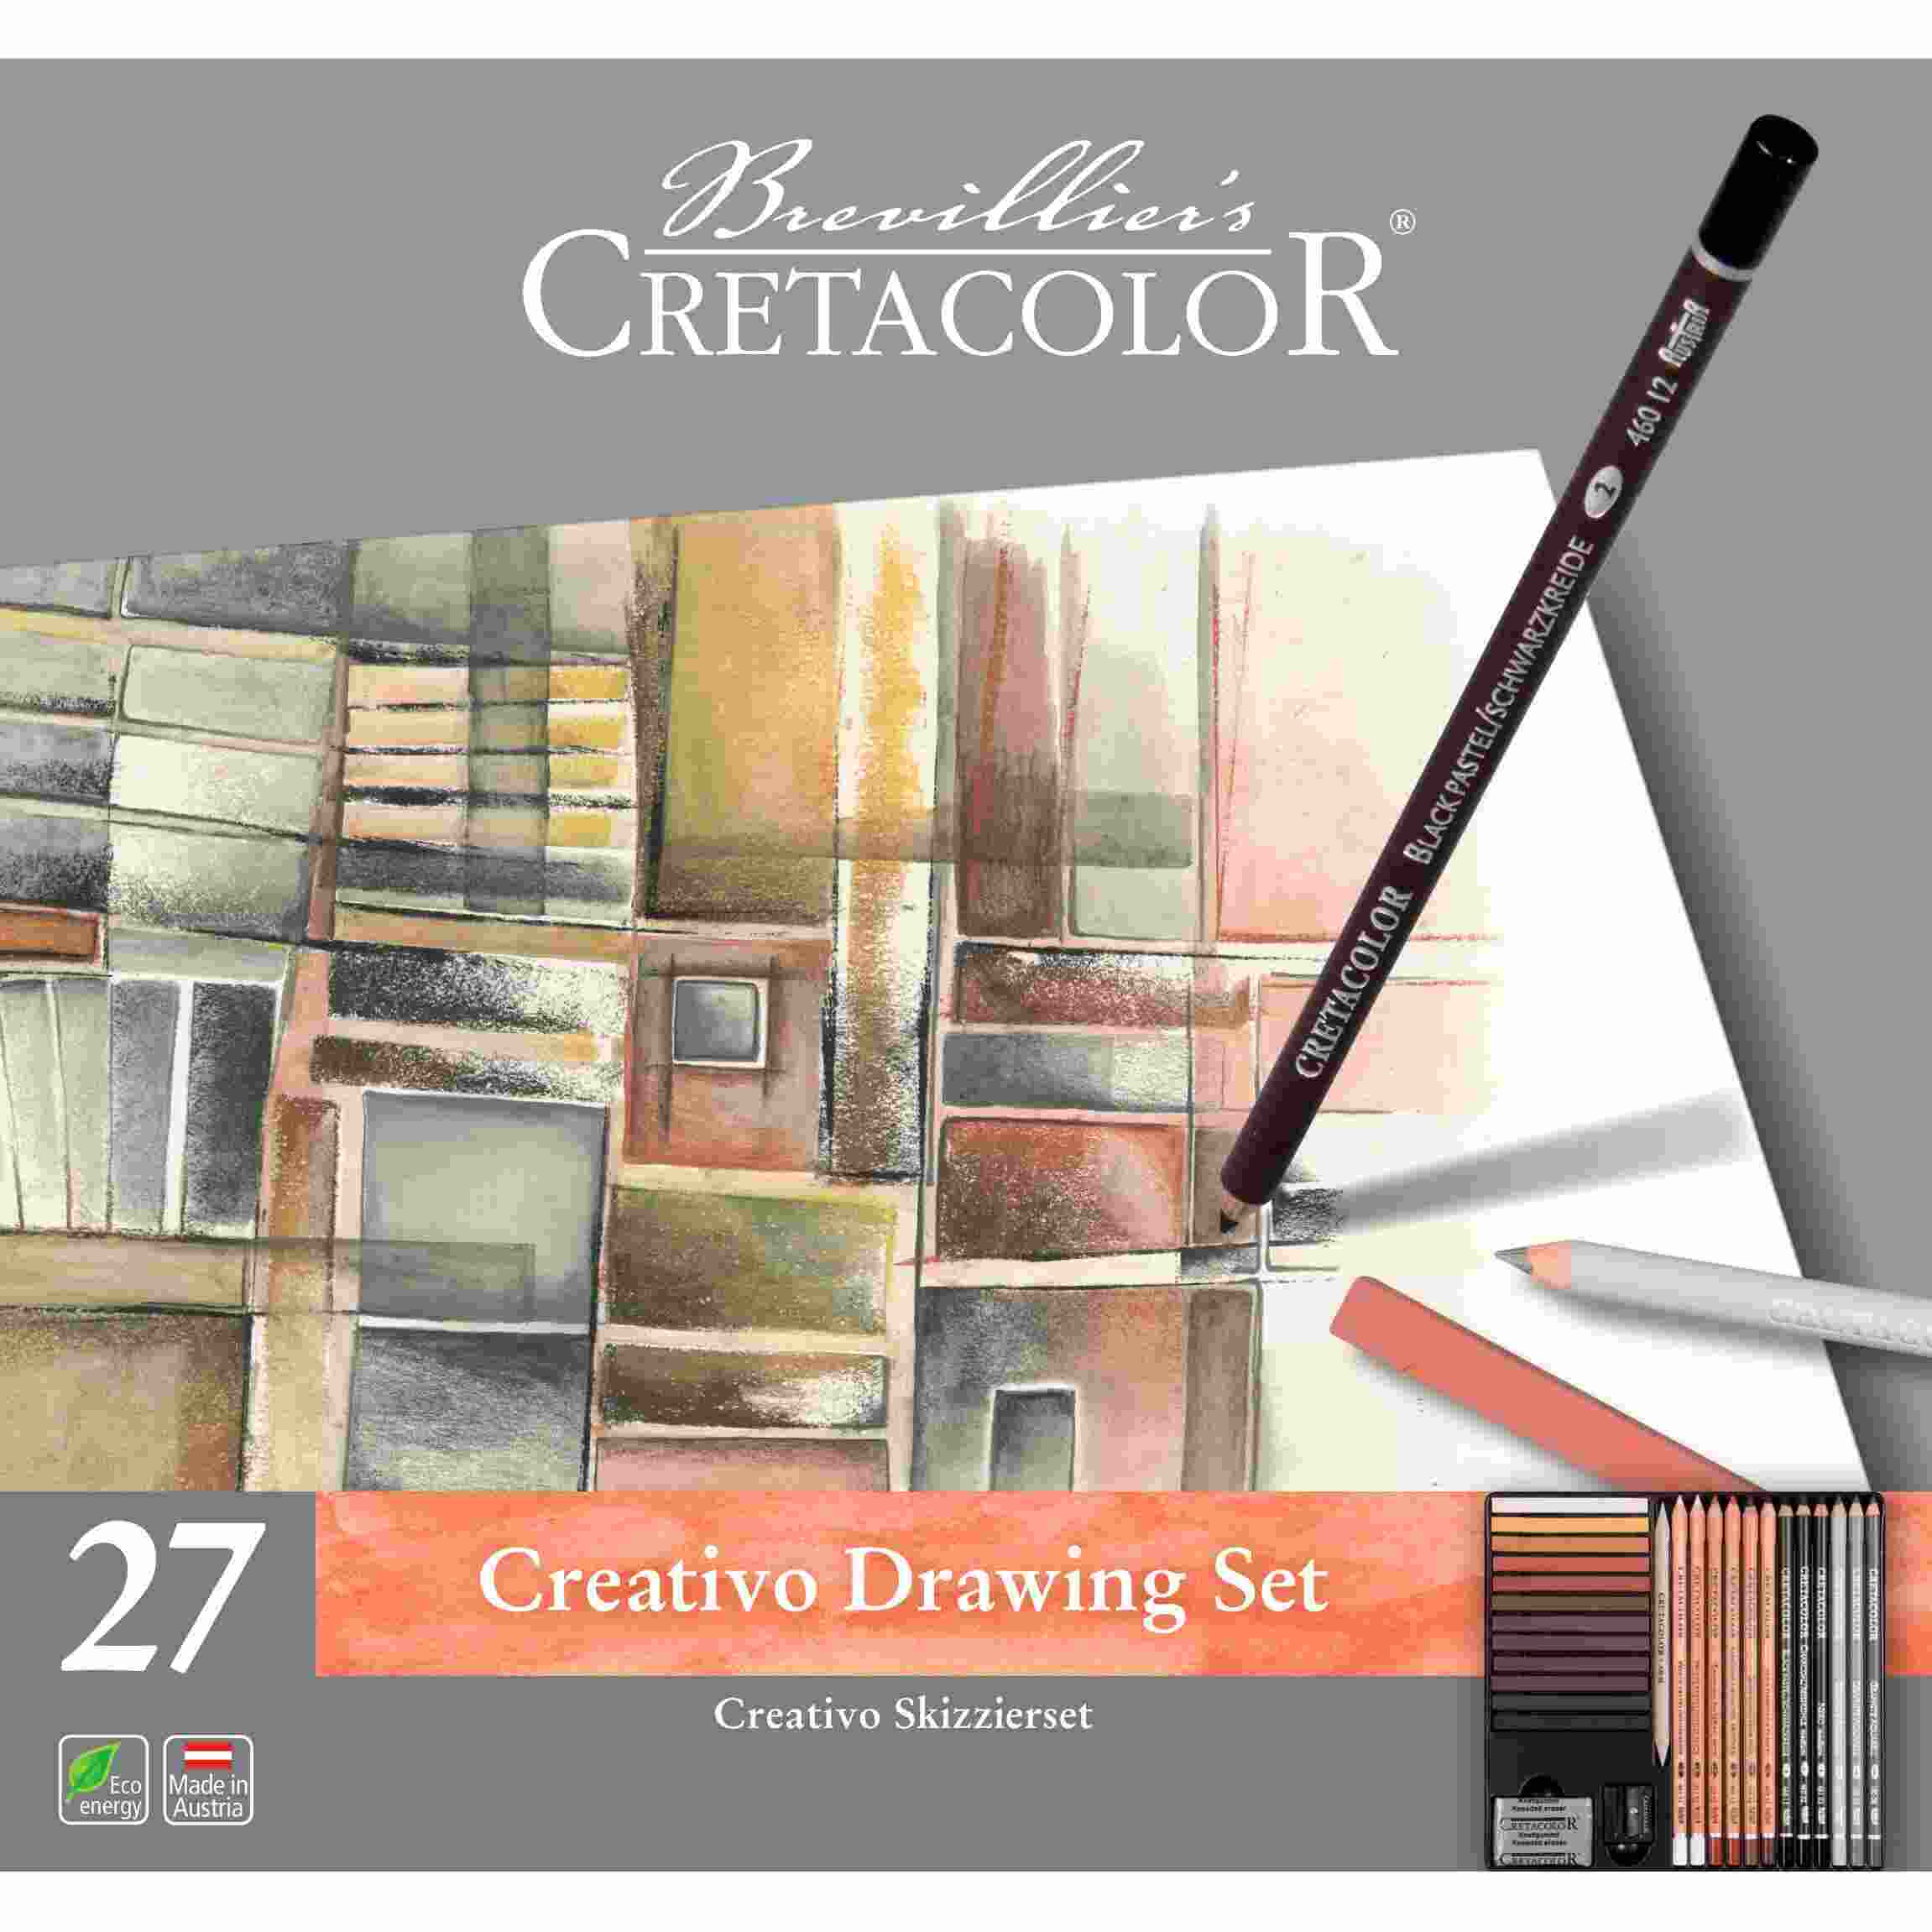 Cretacolor Creativo Artist's Drawing Set 27pcs